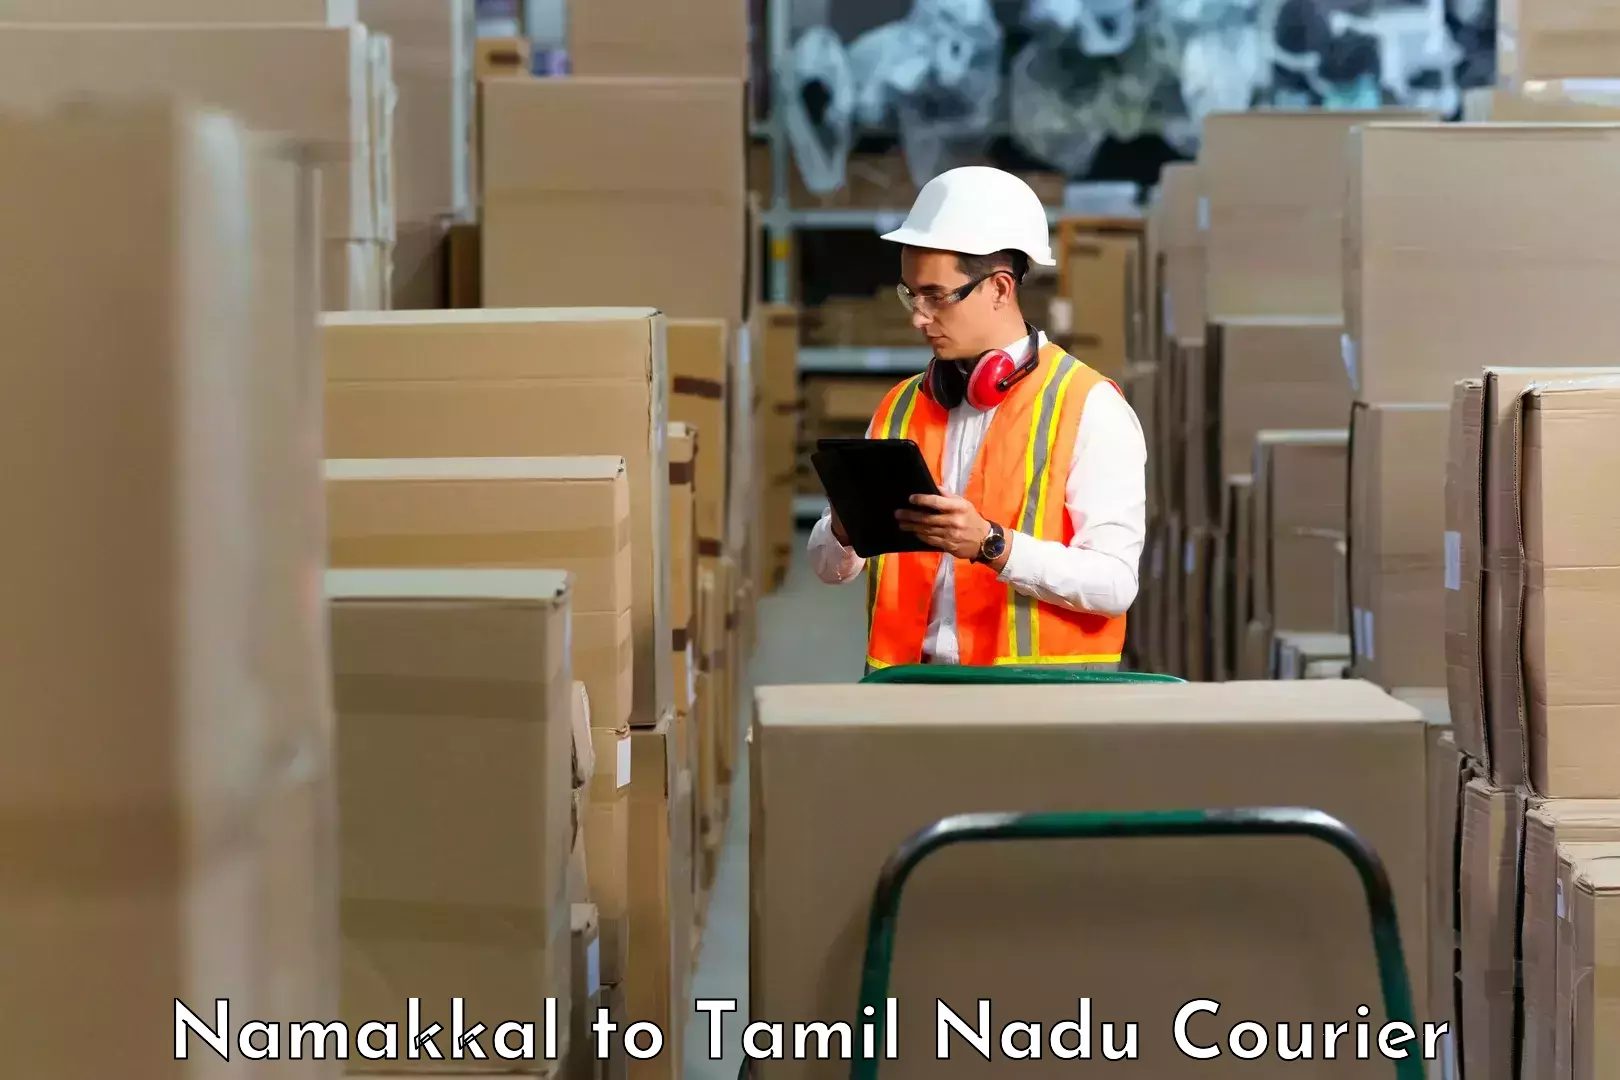 Subscription-based courier Namakkal to Kangeyam